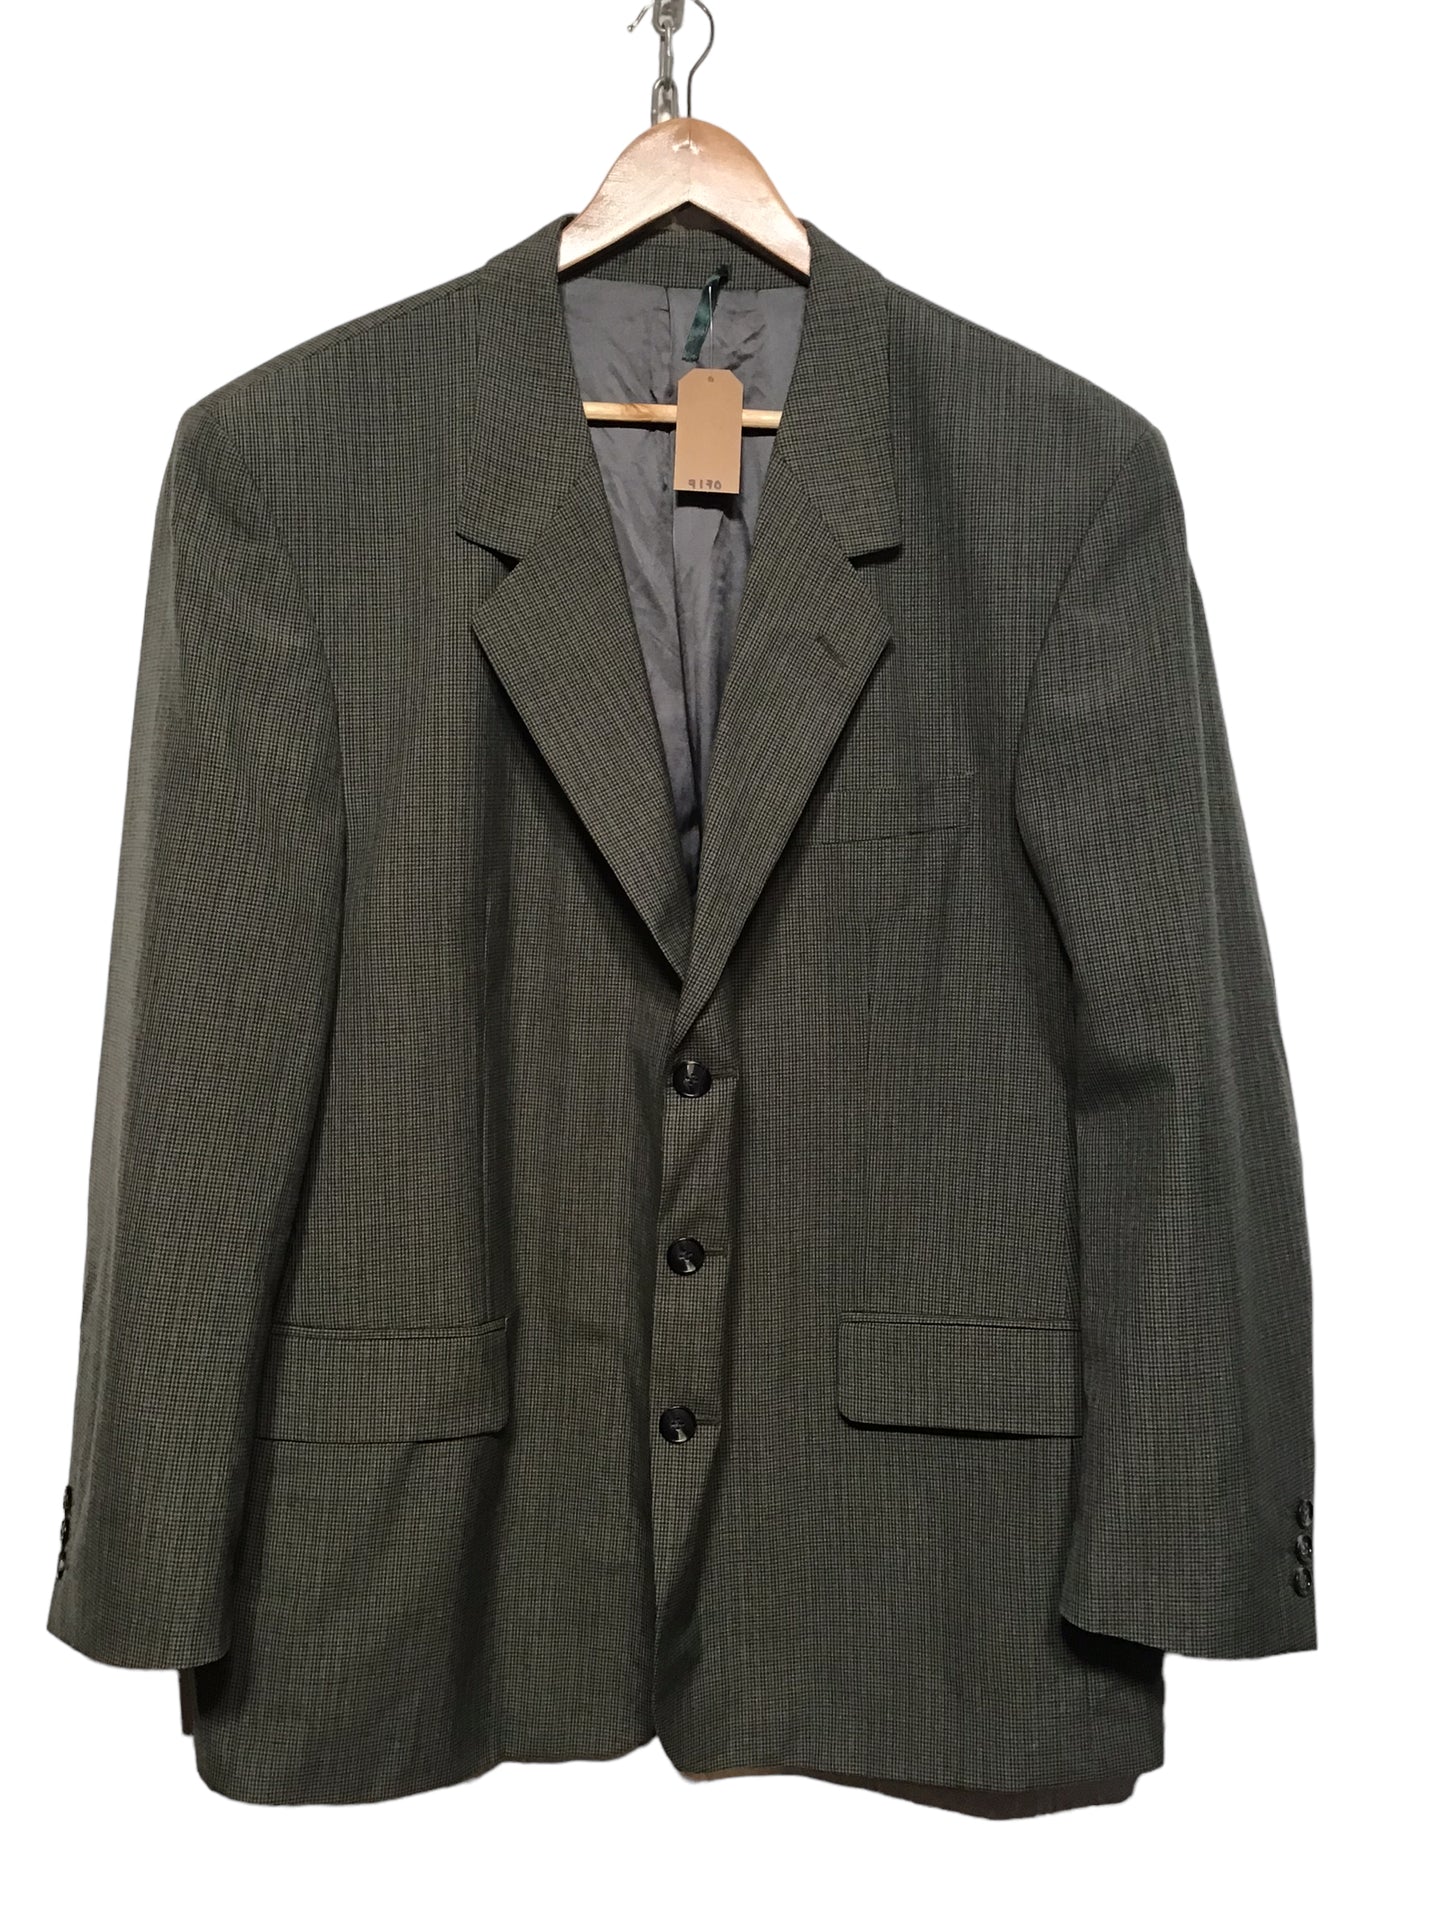 Pierro Cini Checkered Blazer (Size XXL)